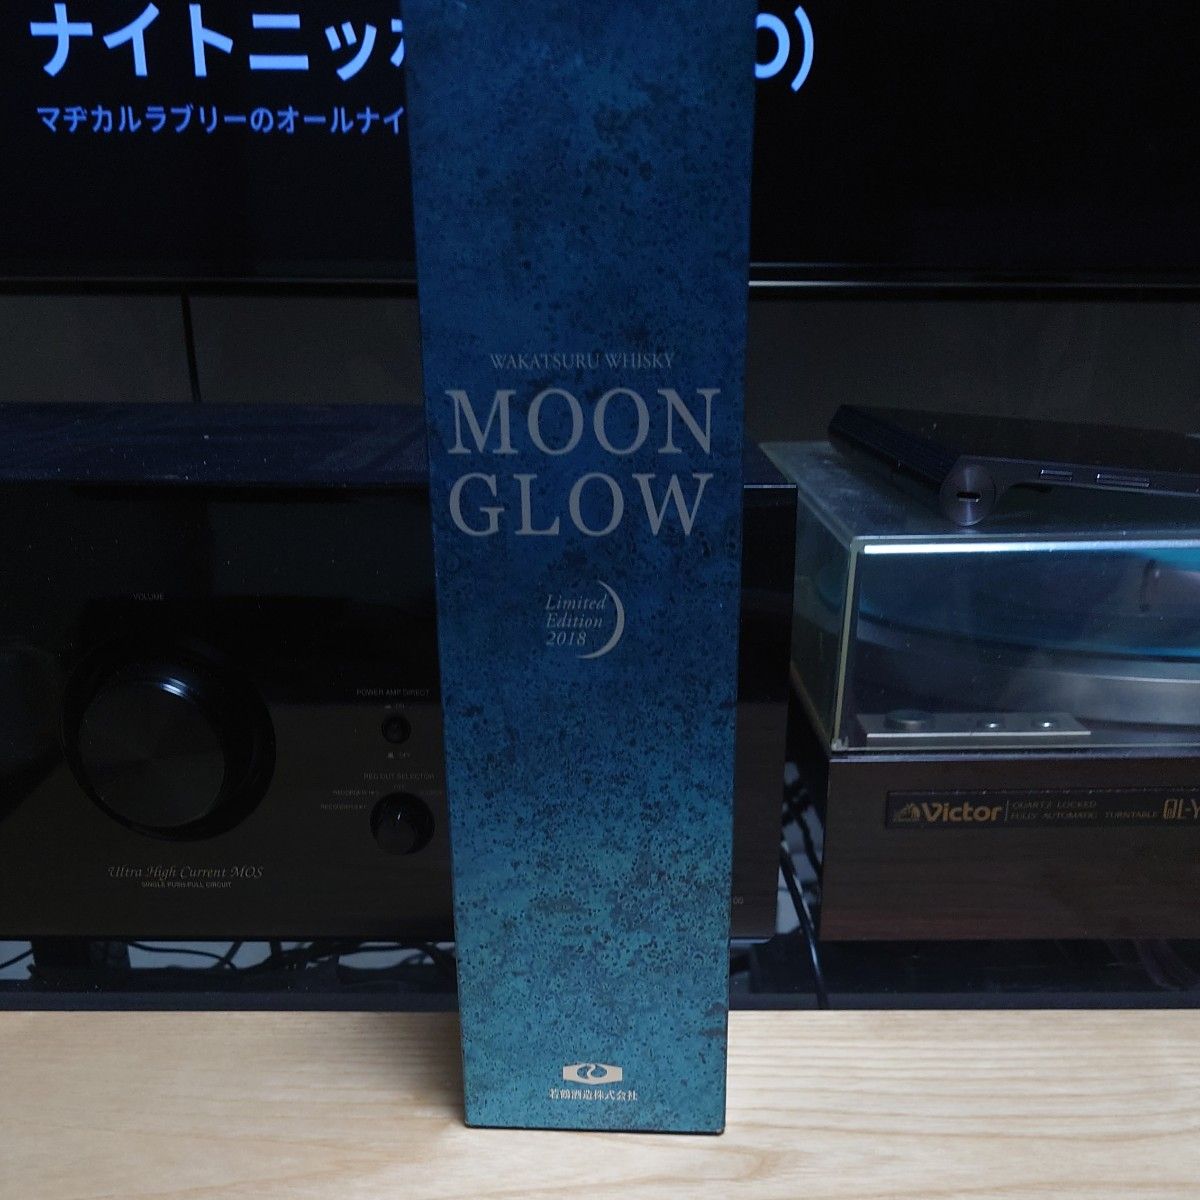 ムーングロー MOON GLOW Limited Edition 2018 700ml 若鶴酒造 三郎丸蒸留所